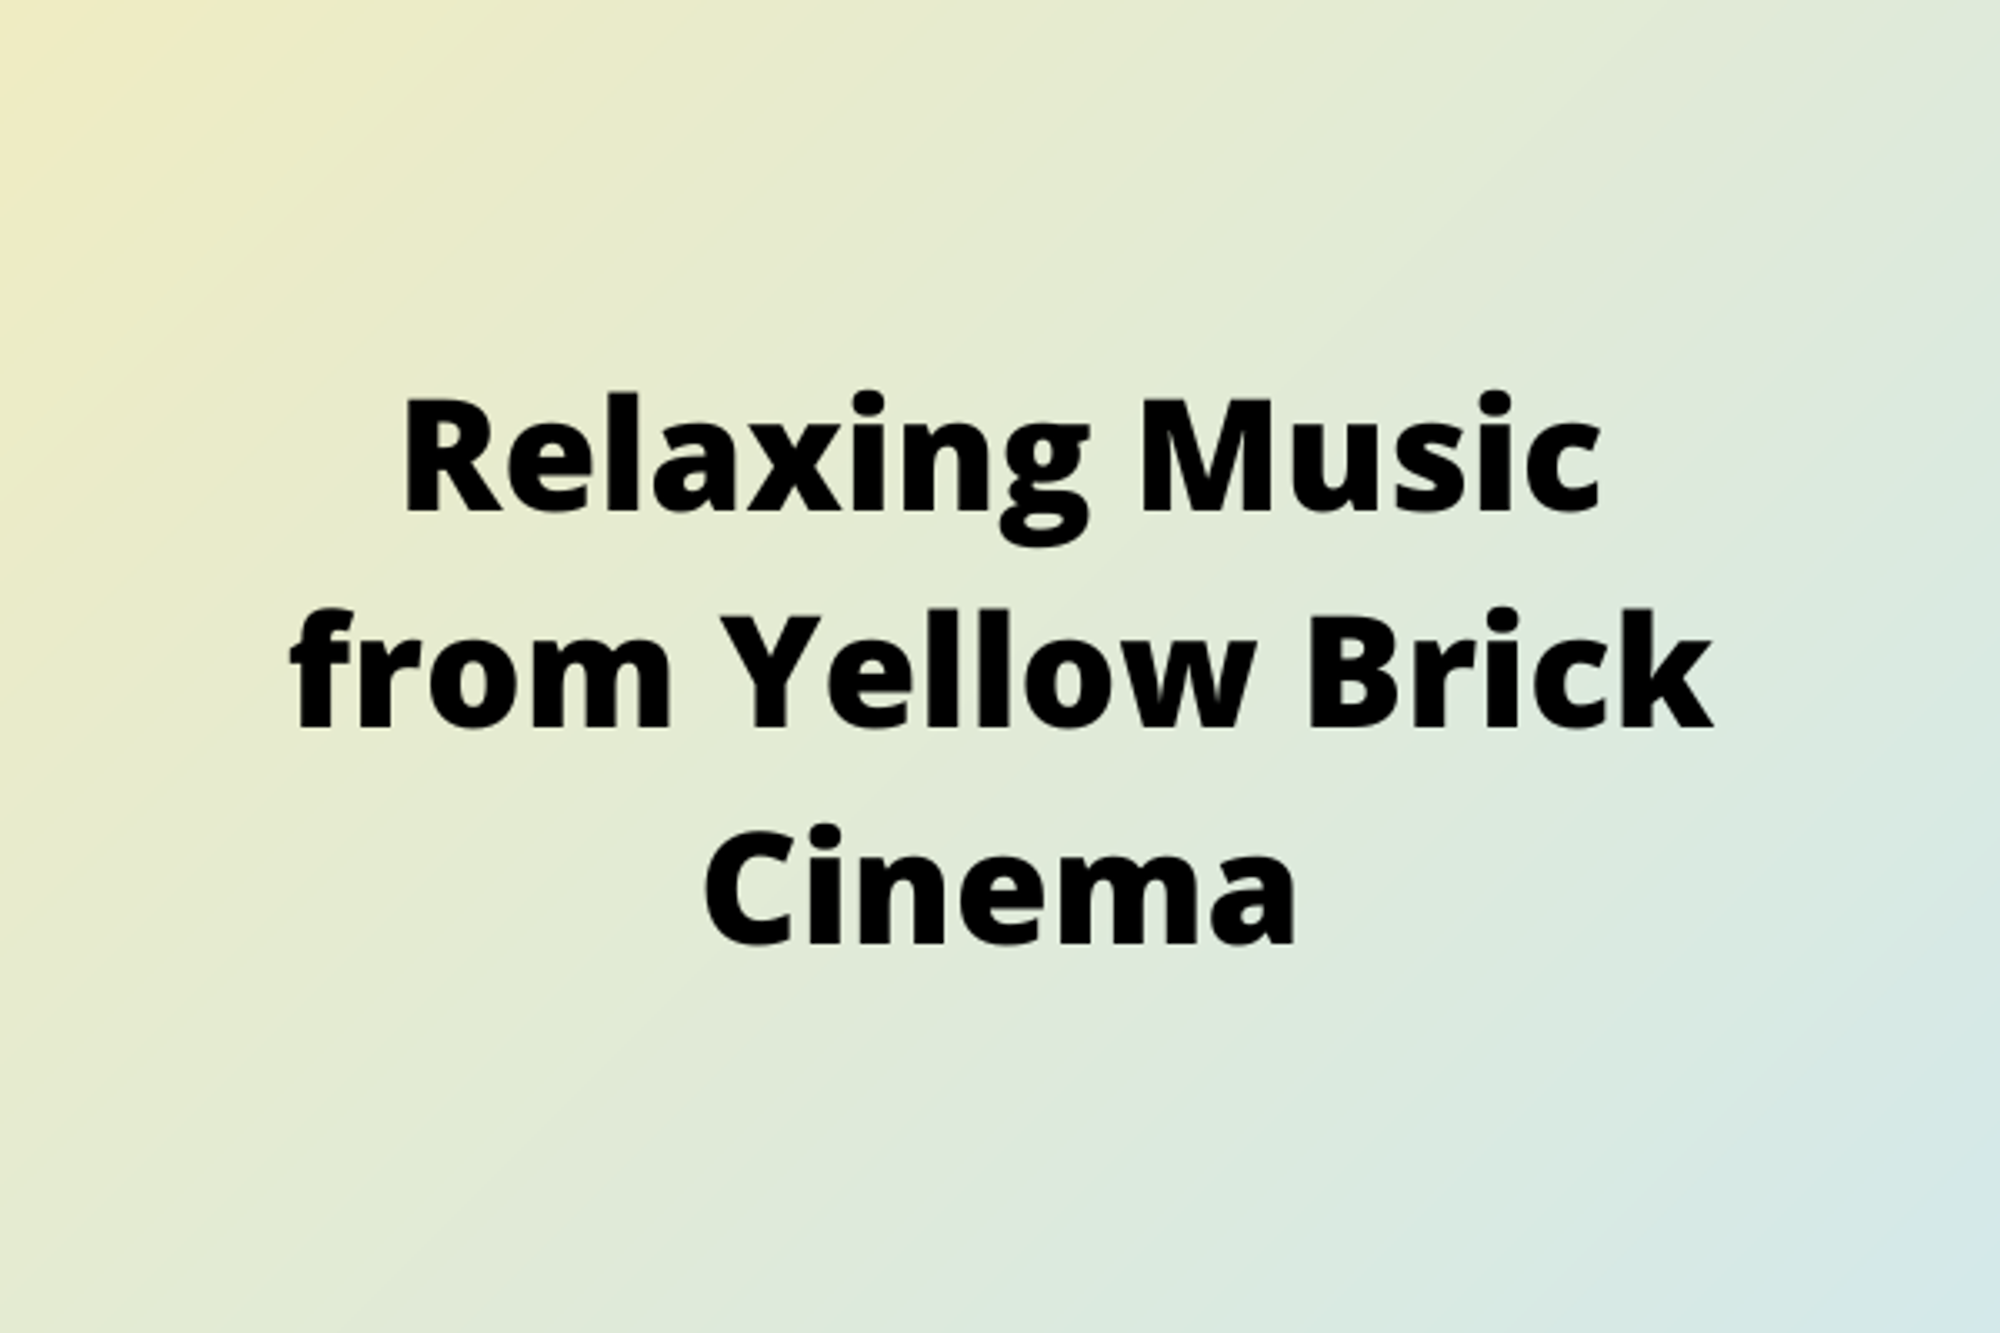 yellow brick cinema music.png